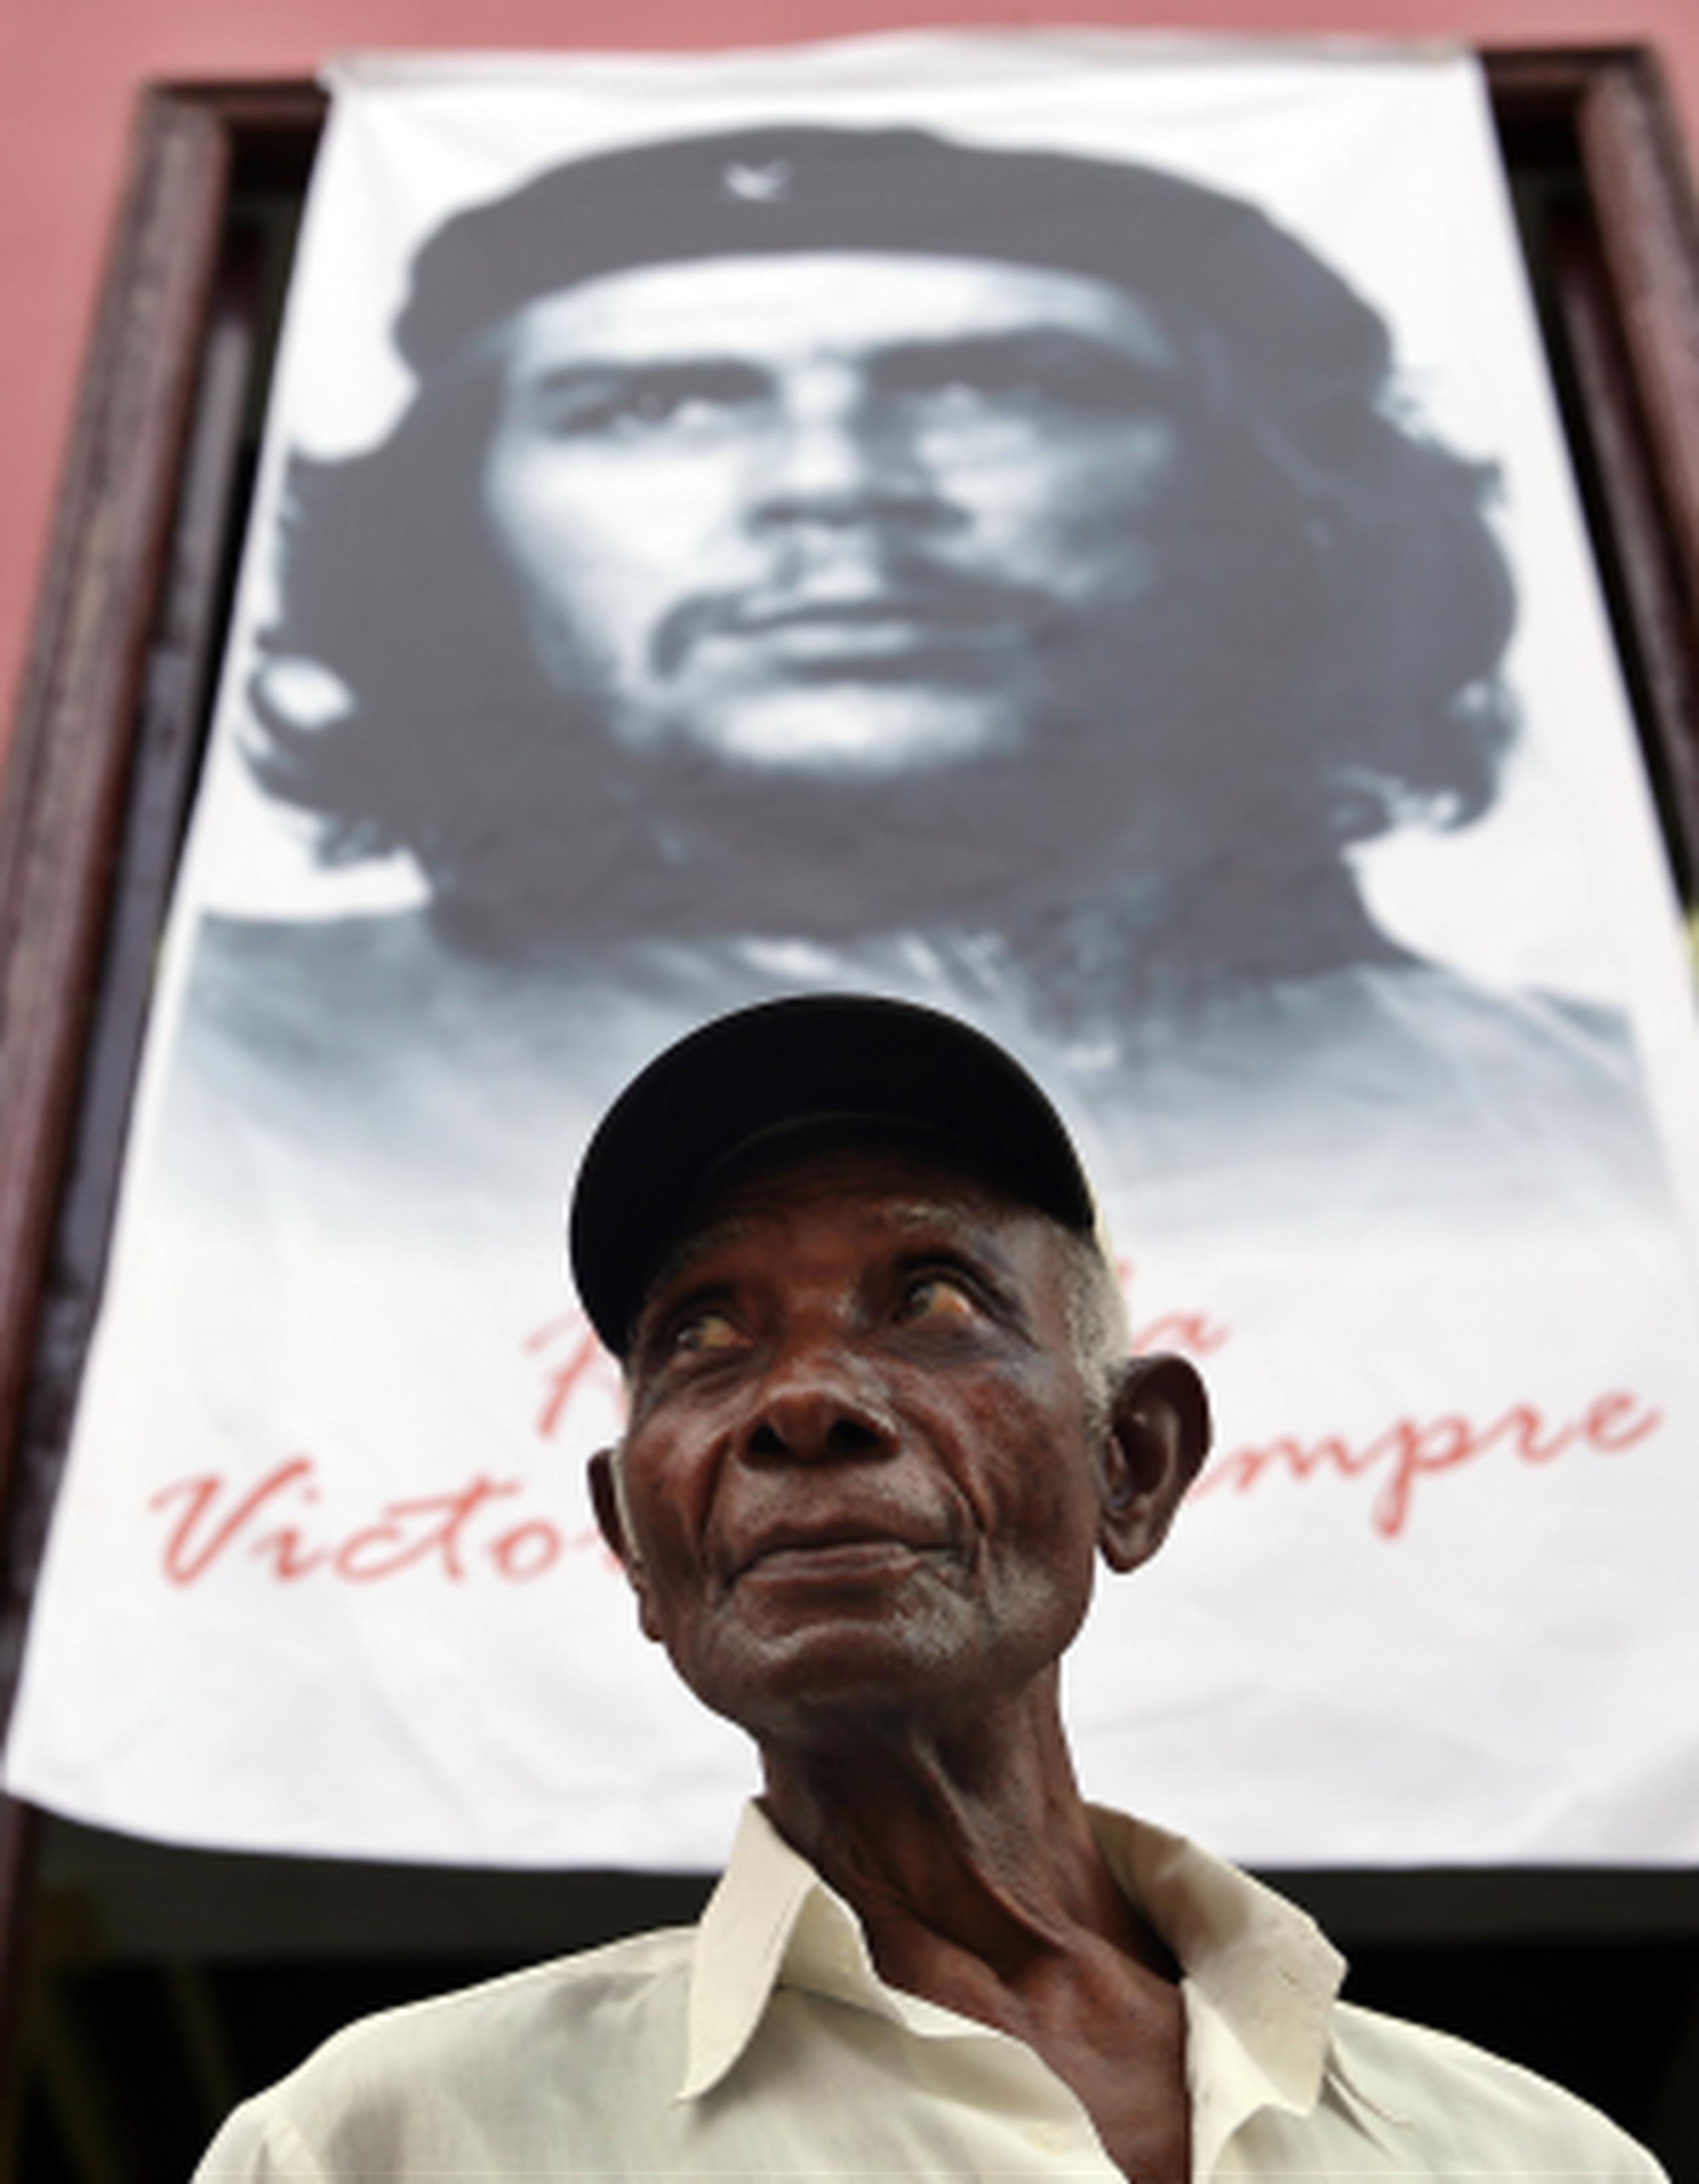 Luis Monteagudo, quien peleó en El Congo con Che Guevara, durante preparativos para la celebración en Cuba del 50 aniversario de la muerte del guerrillero. (AP)